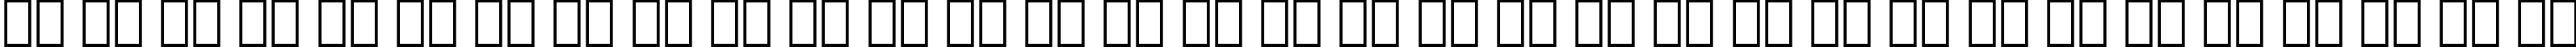 Пример написания русского алфавита шрифтом De Vinne BT